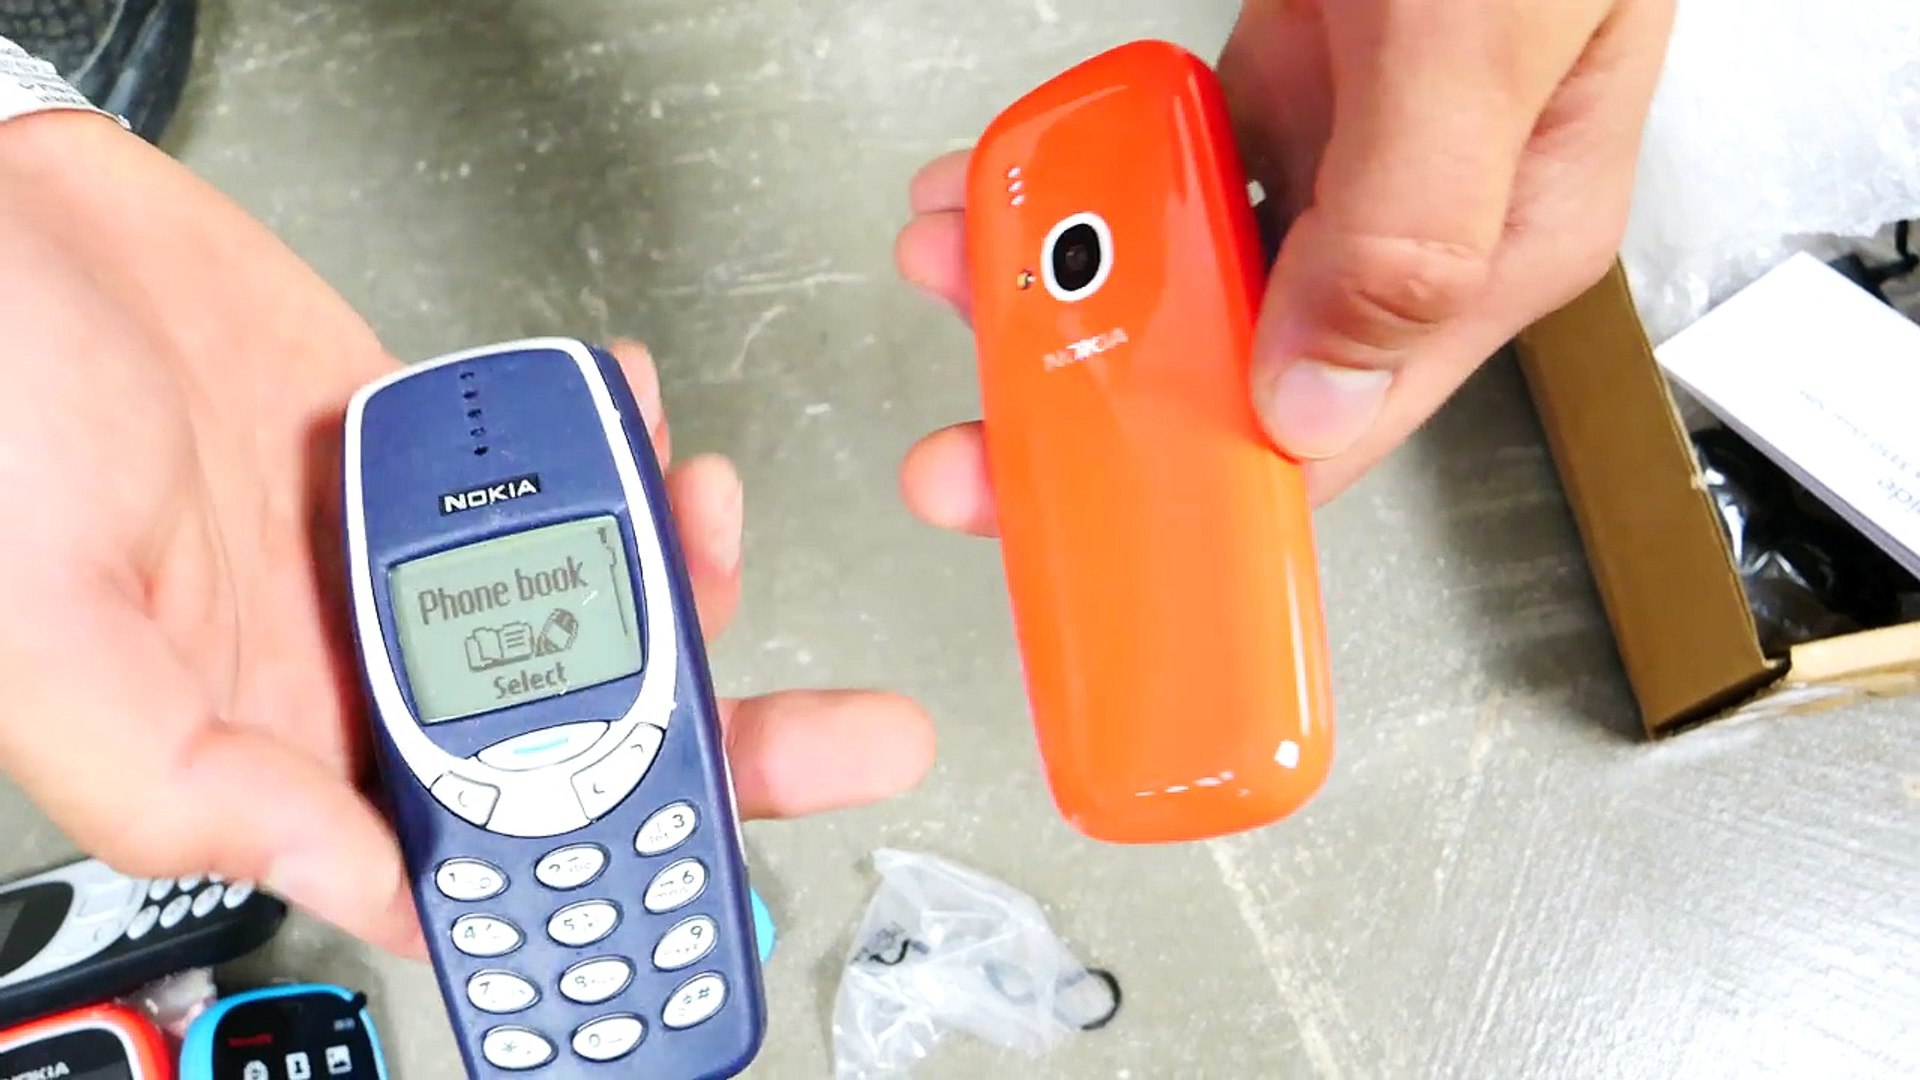 Nokia 3310 là một trong những chiếc điện thoại mang tính biểu tượng của Nokia. Với vỏ máy cứng và những tính năng tiên tiến, Nokia 3310 sẽ khiến bạn cảm thấy yên tâm khi sử dụng. Được trang bị pin lâu và khả năng chống va đập, bạn sẽ không bao giờ phải lo lắng về việc chiếc điện thoại của mình bị hỏng hóc.